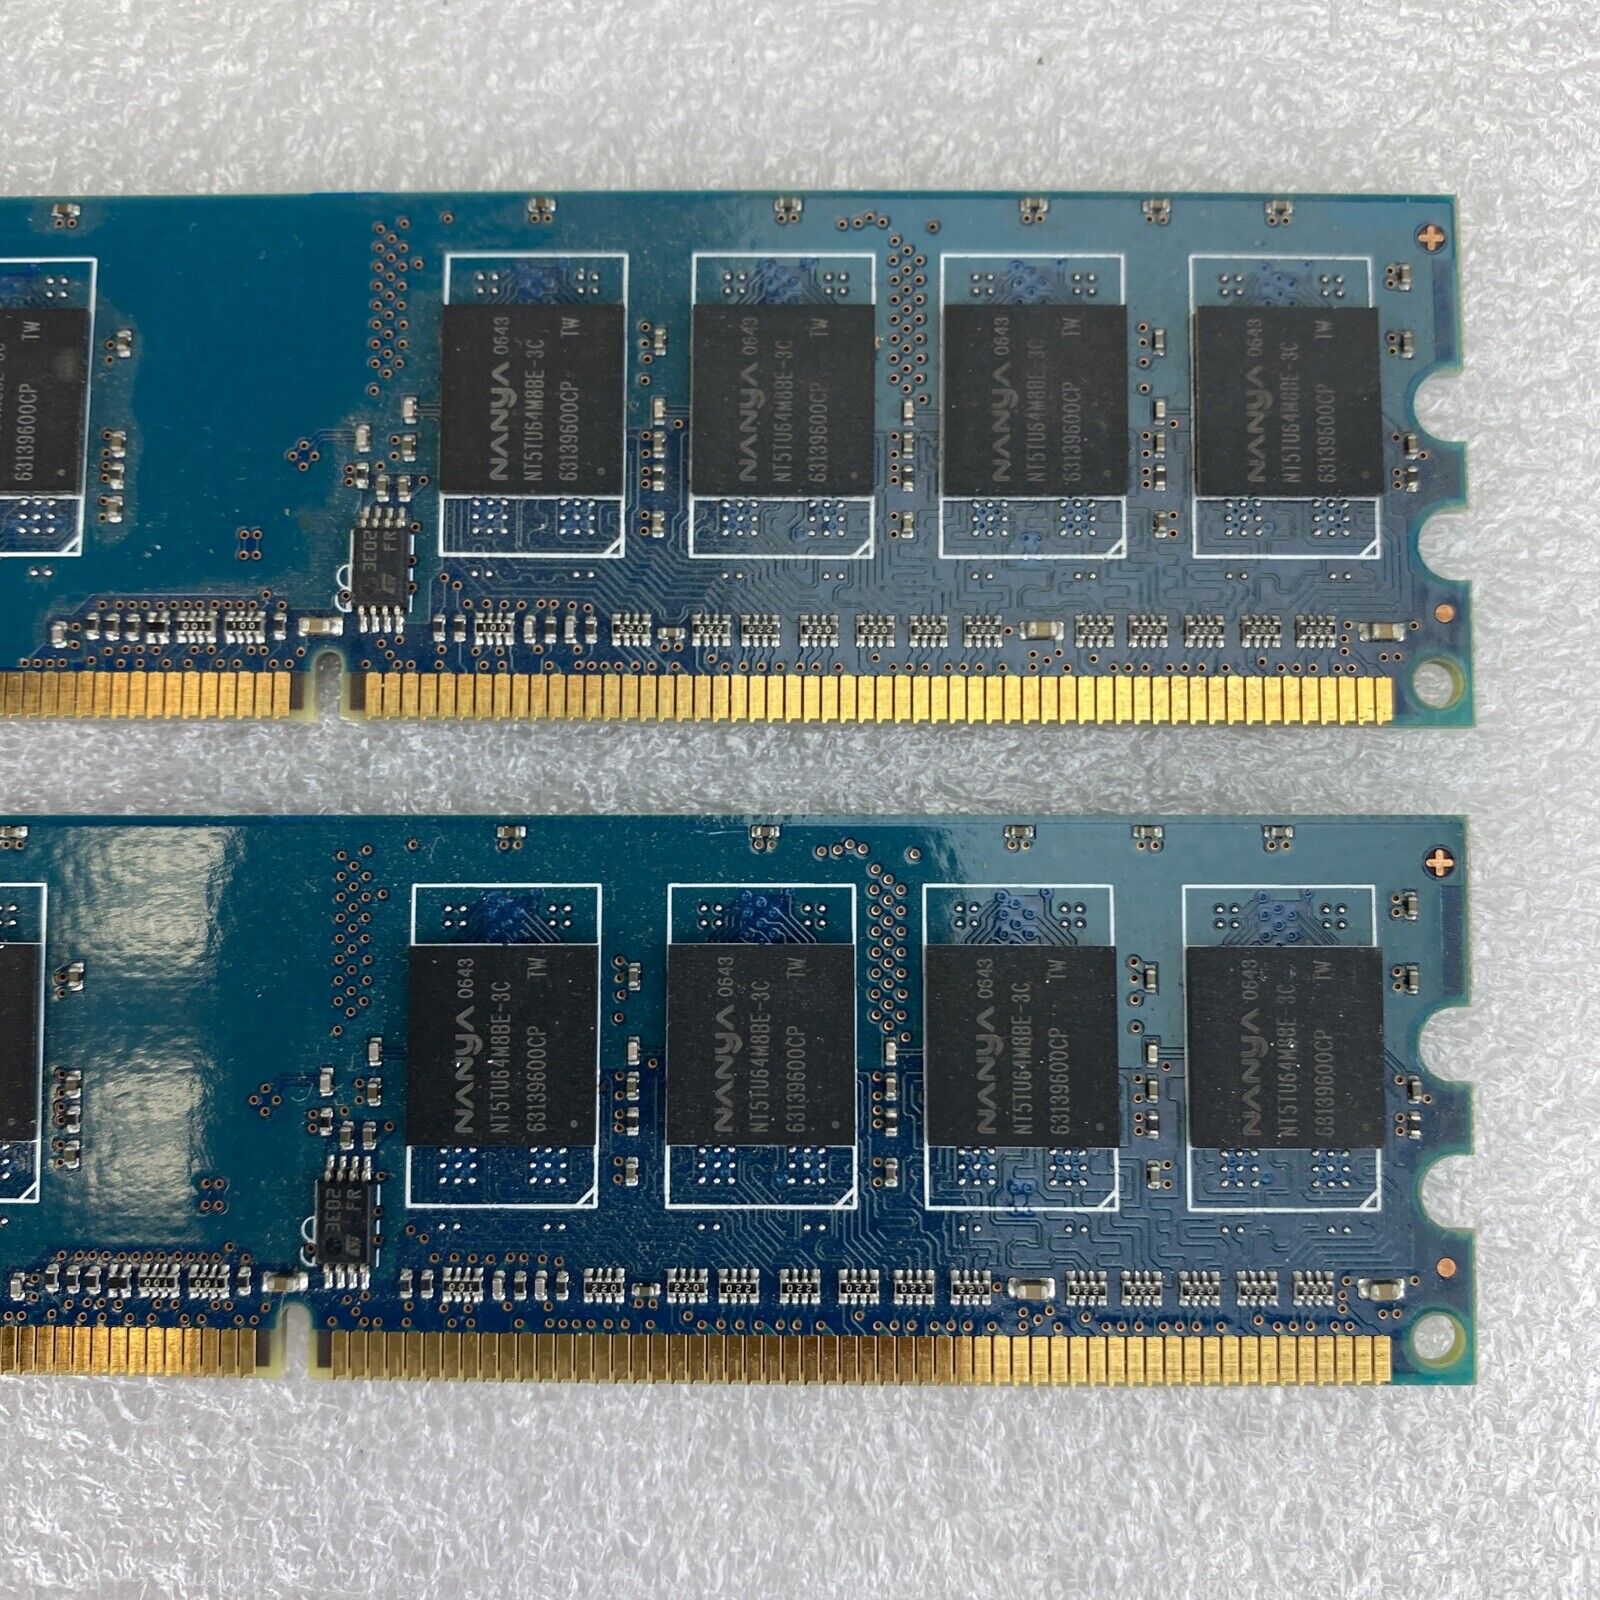 2x 512MB Nanya NT512T64U88B0BY-3C 1Rx8 PC2-5300U-555 667MHz DDR2 memory RAM